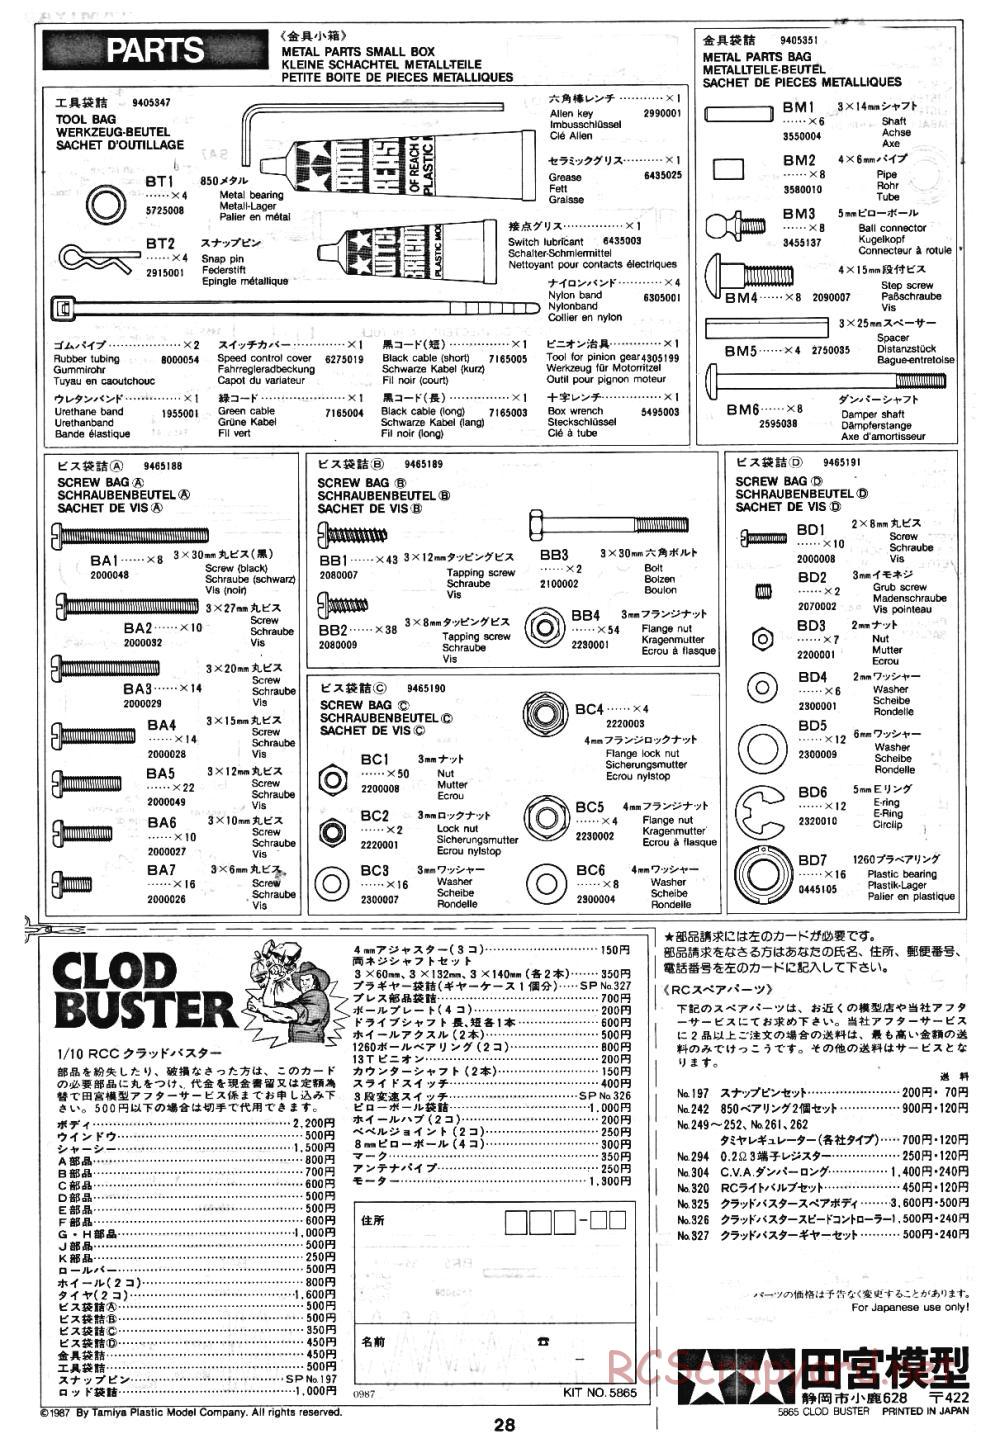 Tamiya - Clod Buster - 58065 - Manual - Page 28